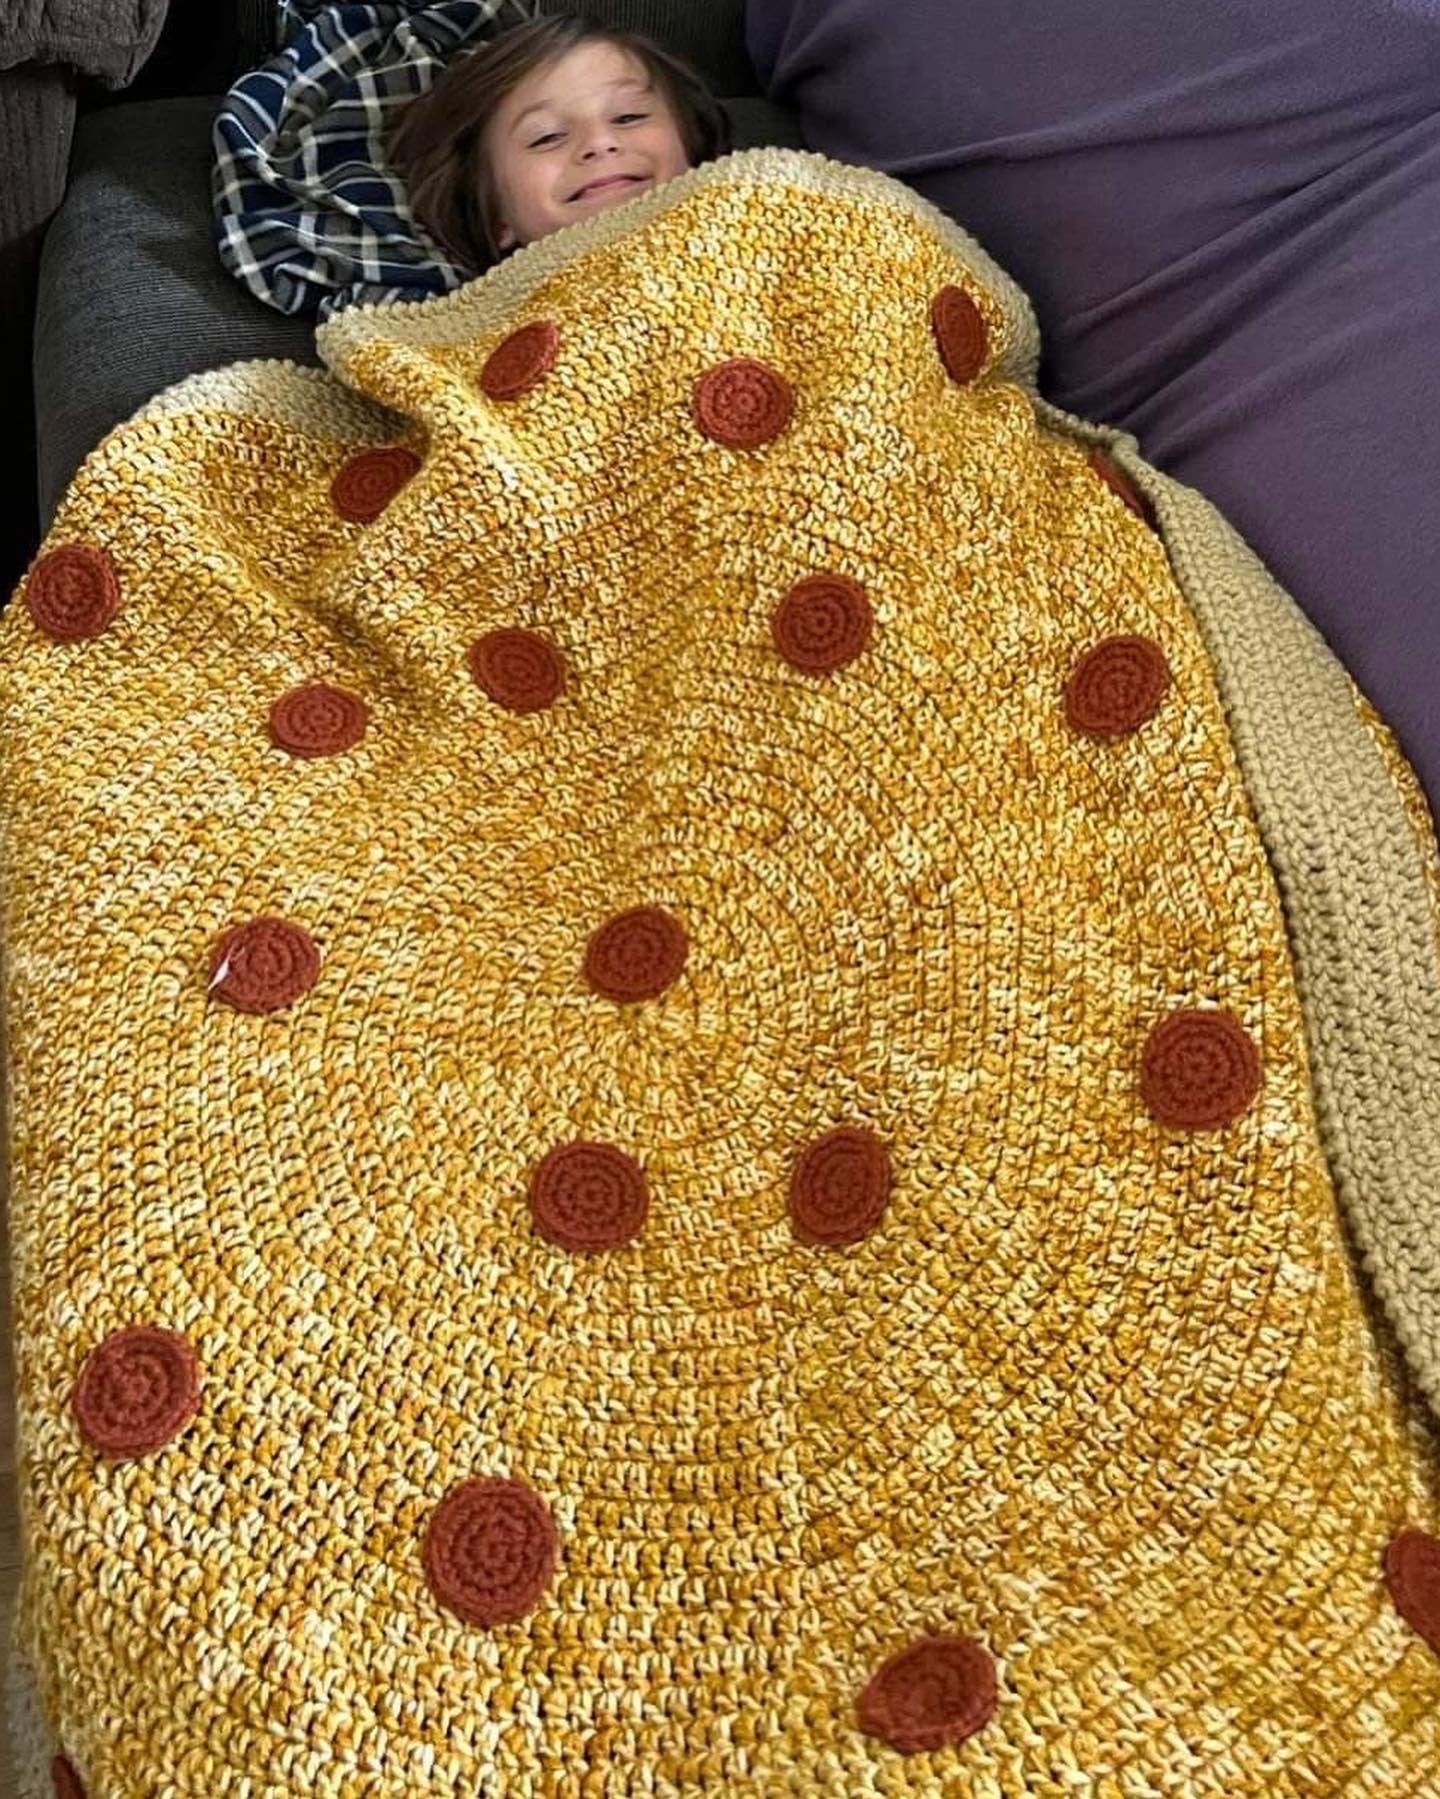 Pepperoni Pizza Blanket Crochet pattern by DACcrochet